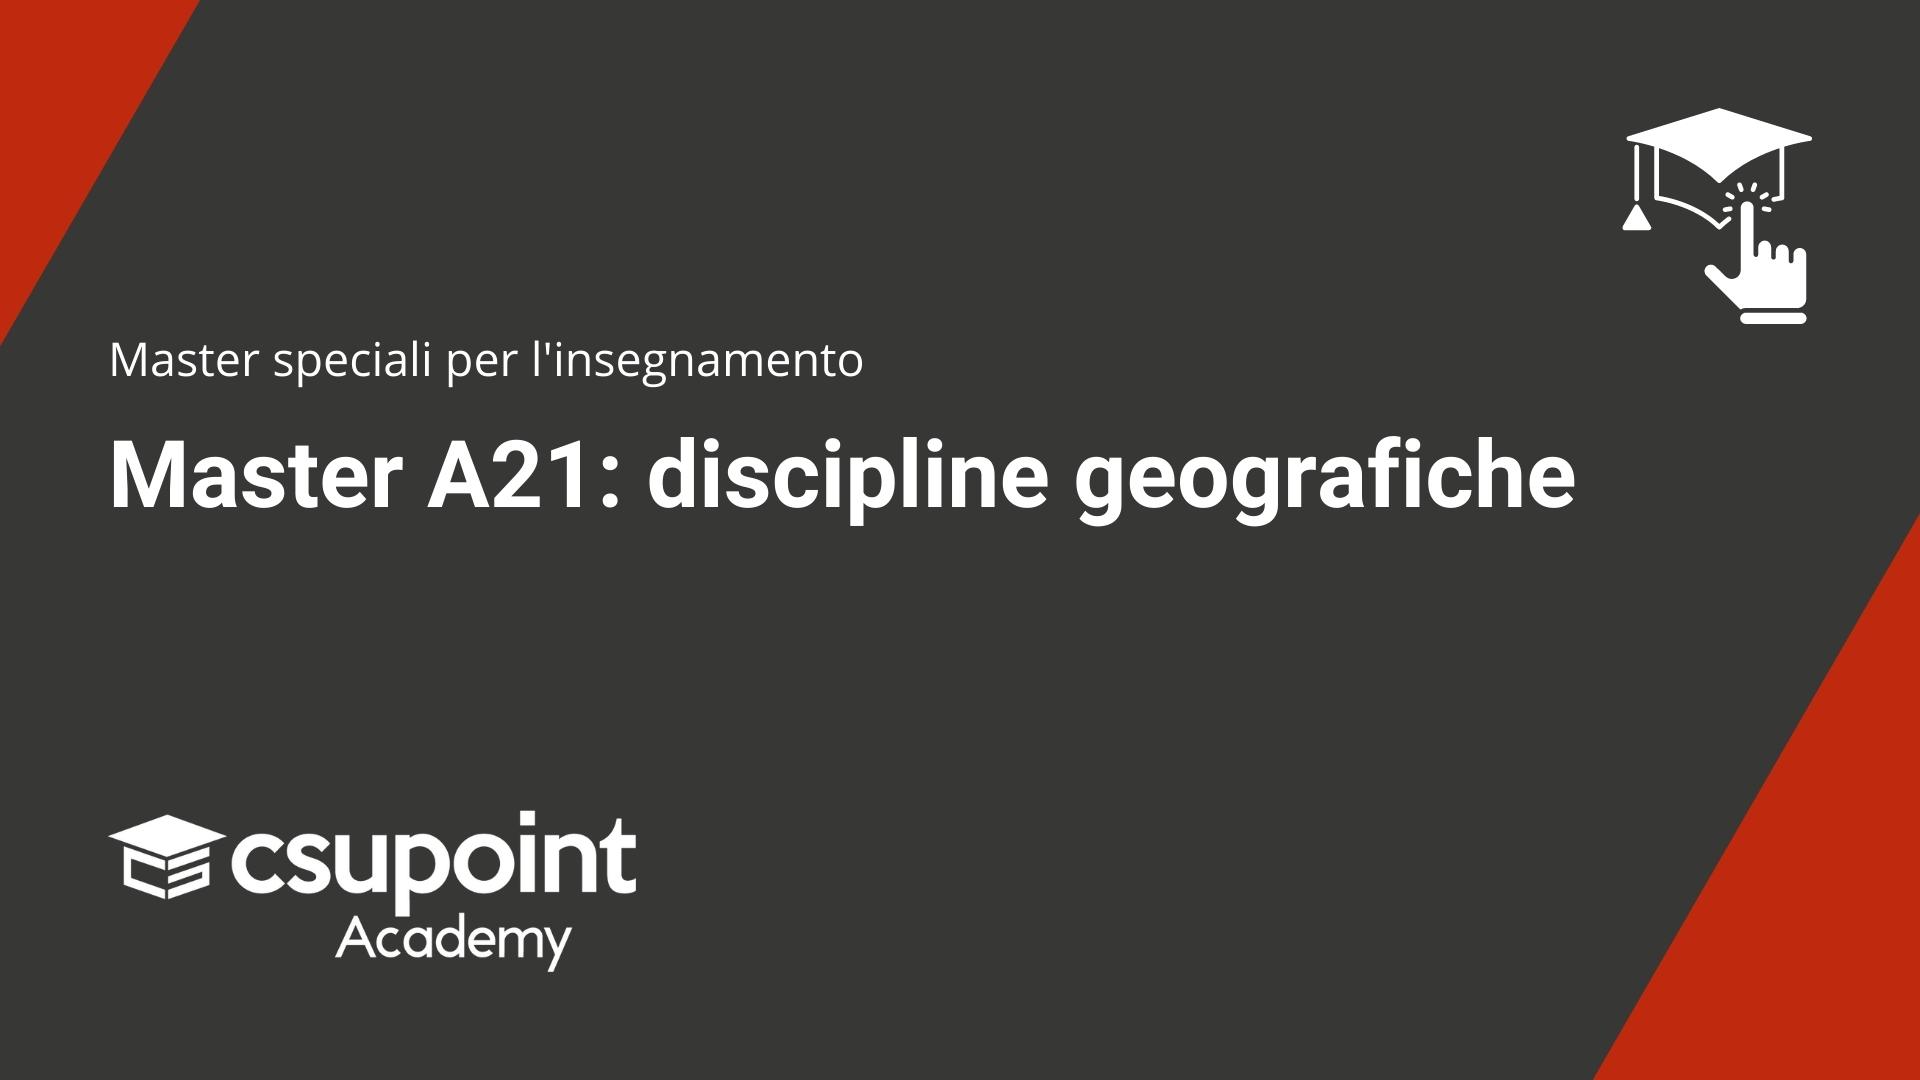 Master A21 discipline geografiche